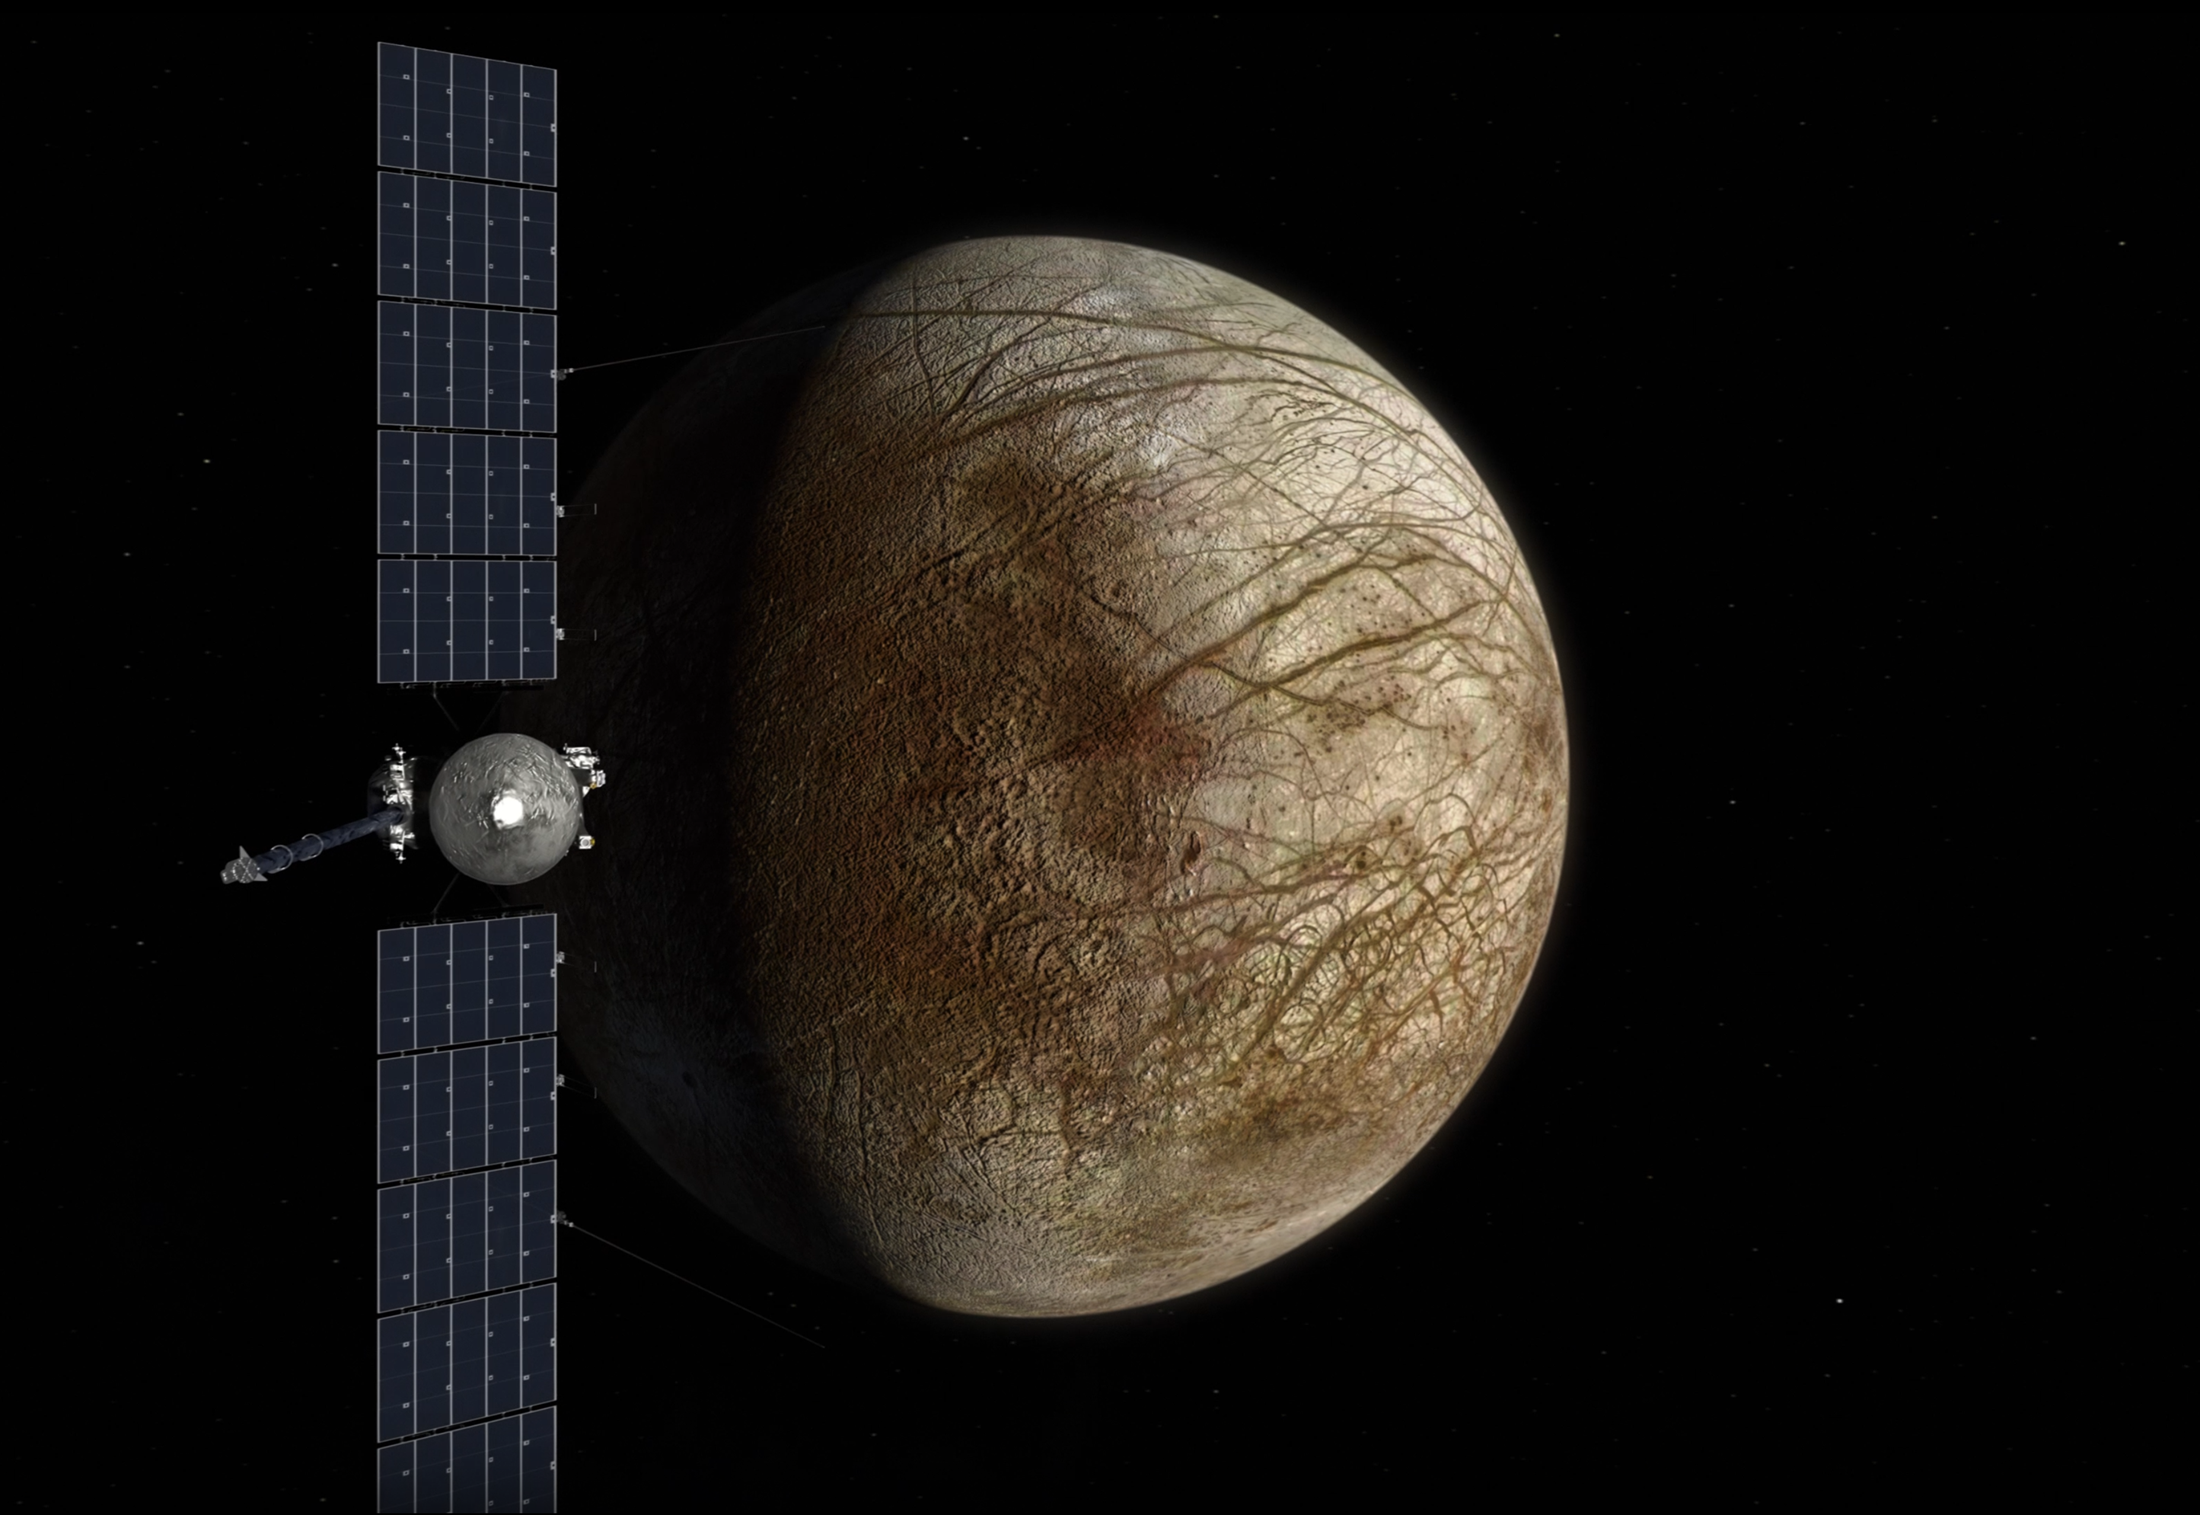 Uskoro bi mogli otkriti postoji li život na Jupiterovom mjesecu Europi